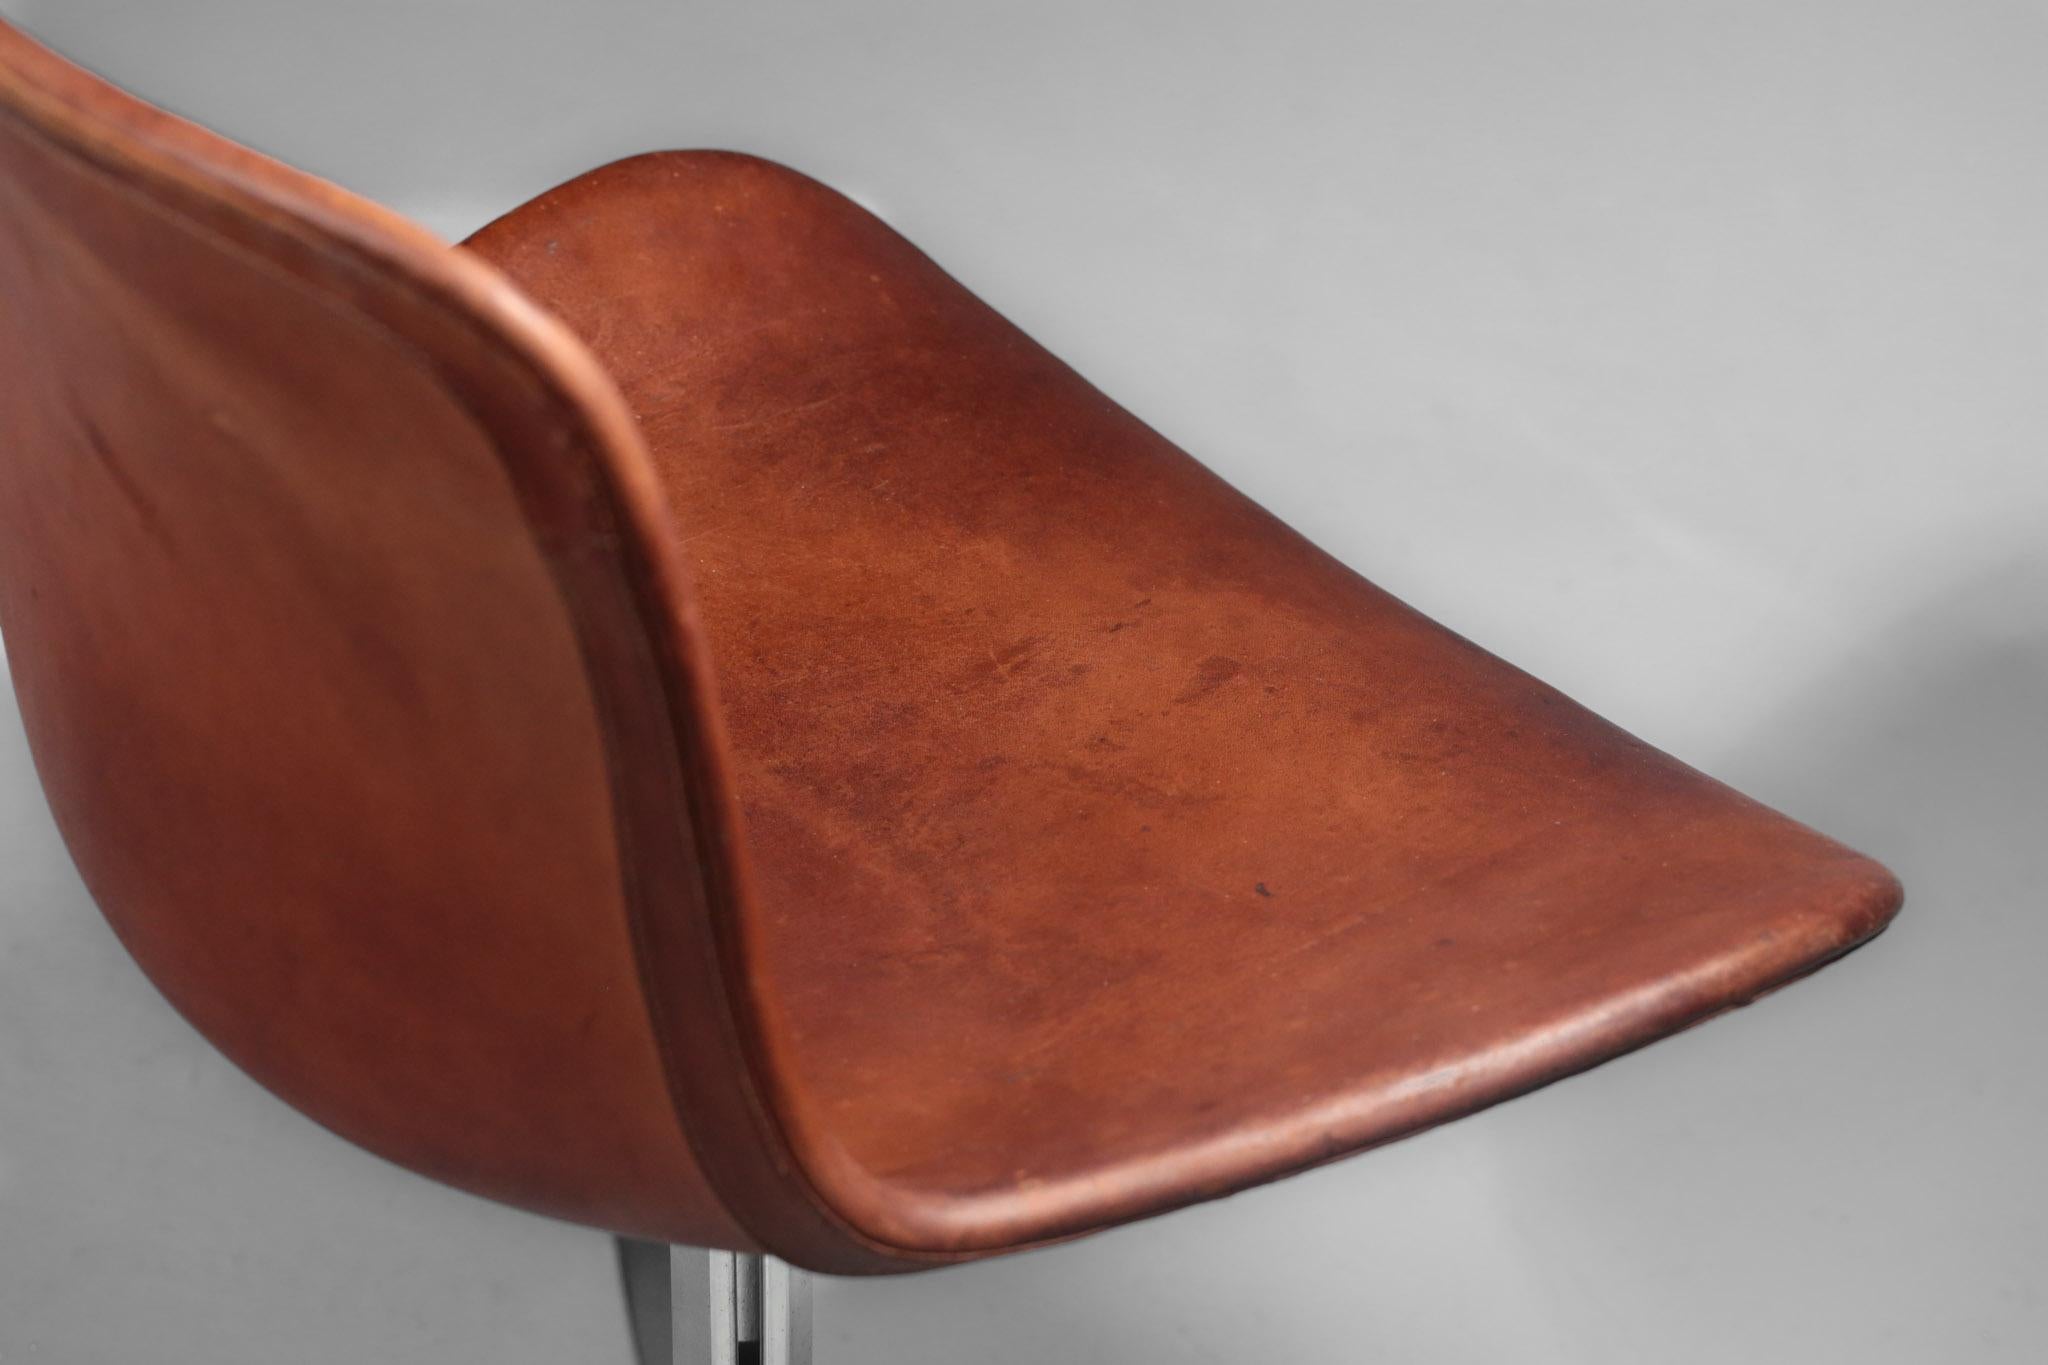 Scandinavian Modern Poul Kjaerholm Chair, Model PK9 for Kold Christensen